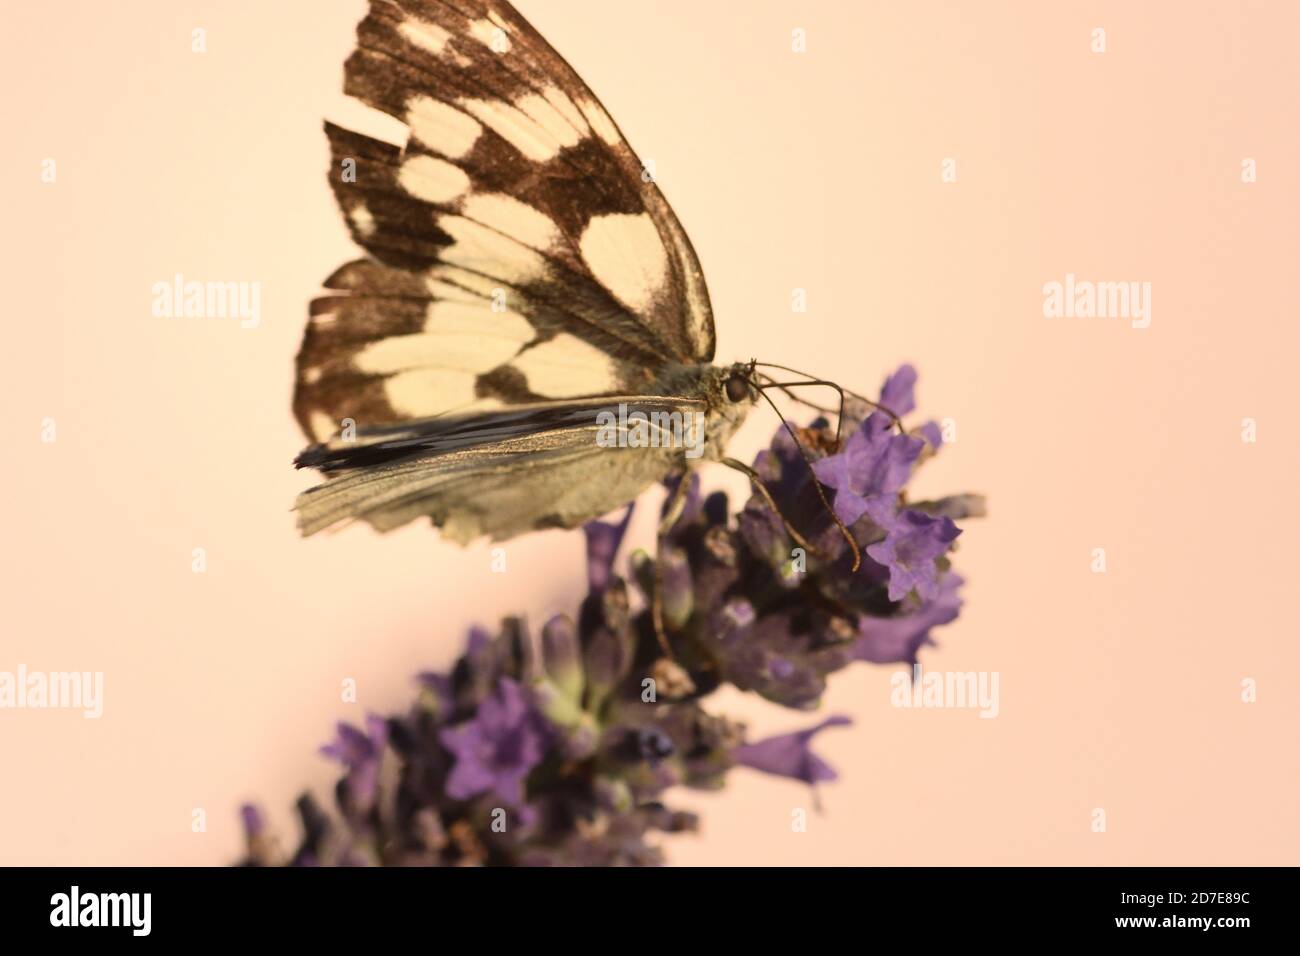 Macro photographie du papillon de l'espèce blanche marbrée (Melanargia galathea) reposant sur des fleurs de la saison chaude. Banque D'Images